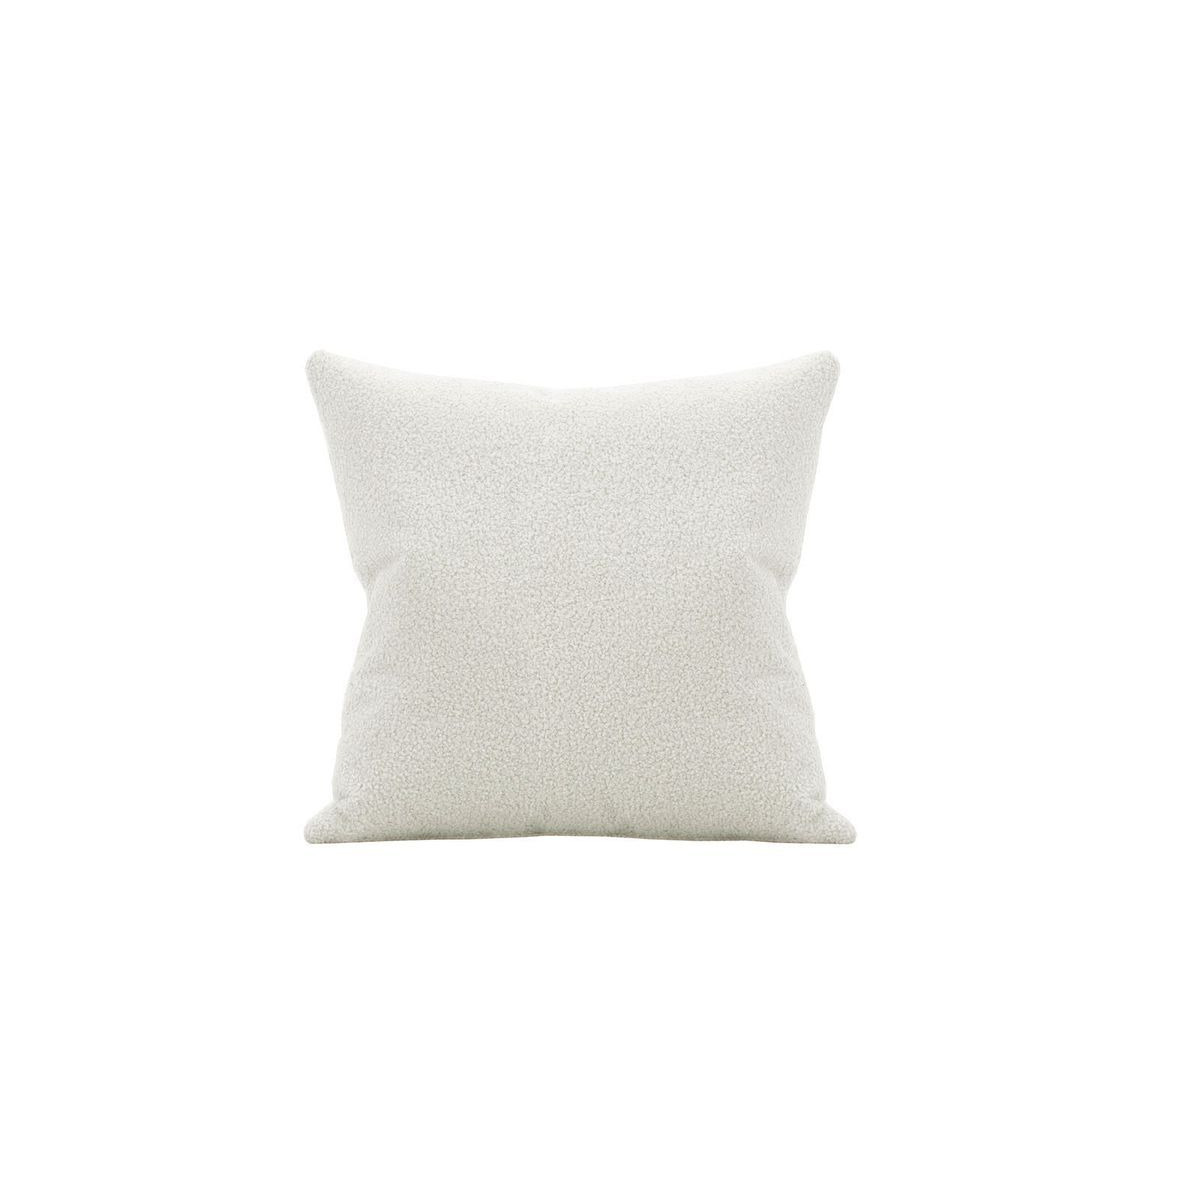 45cm Square Boucle Cushion, boucle grey - image 1